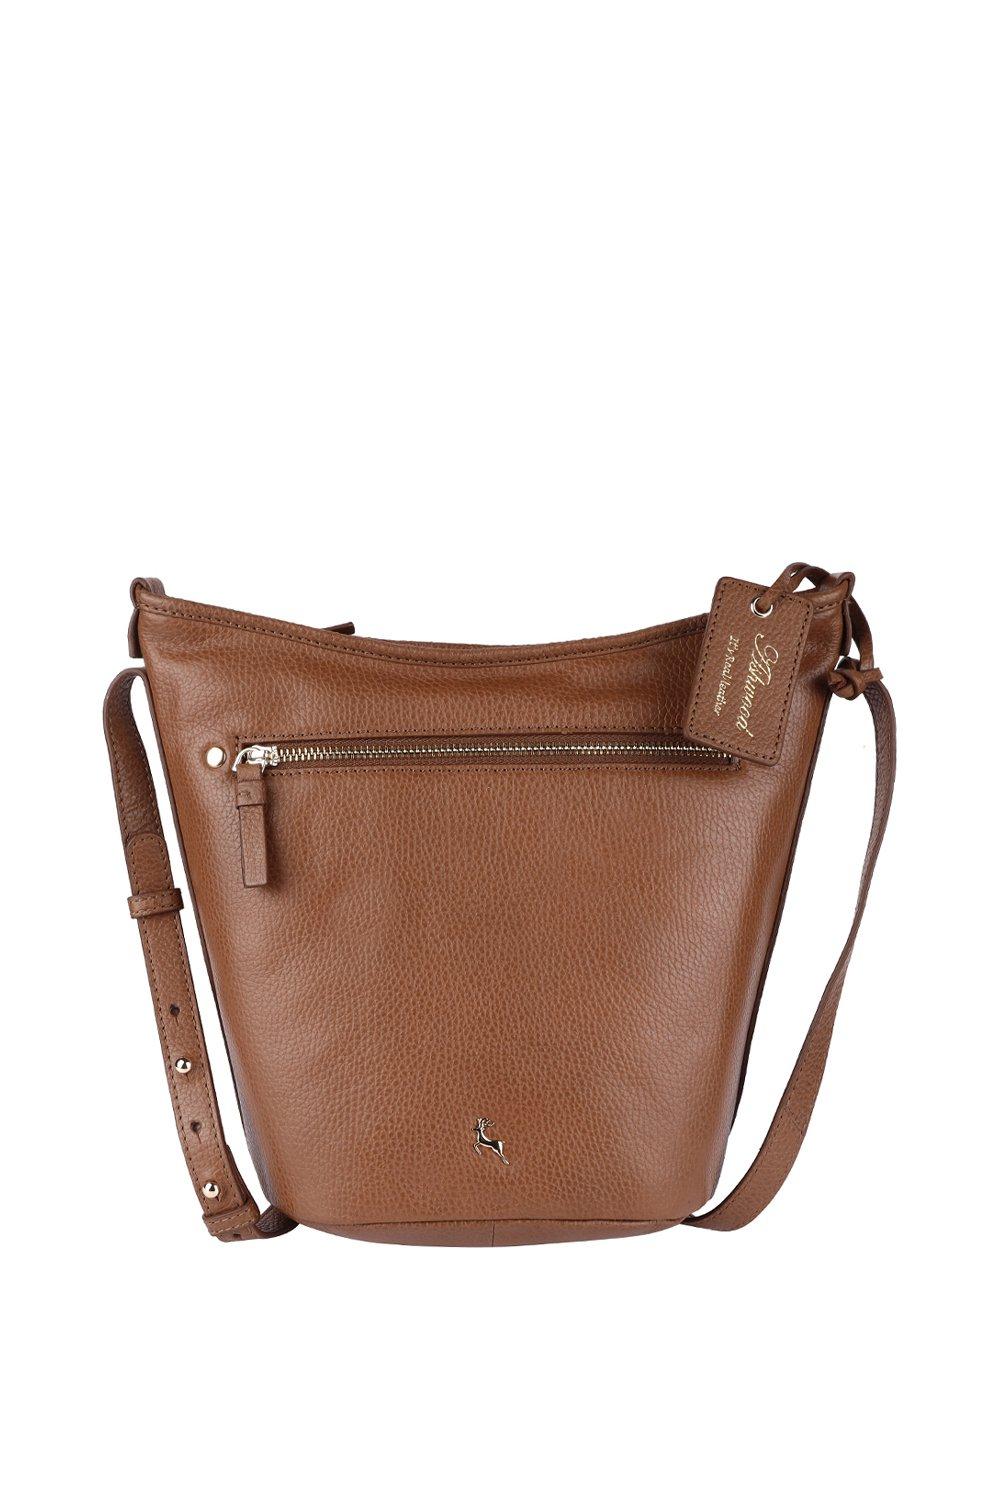 Ashwood, Other, Ashwood Genuine Leather Crossbody Shoulder Bag